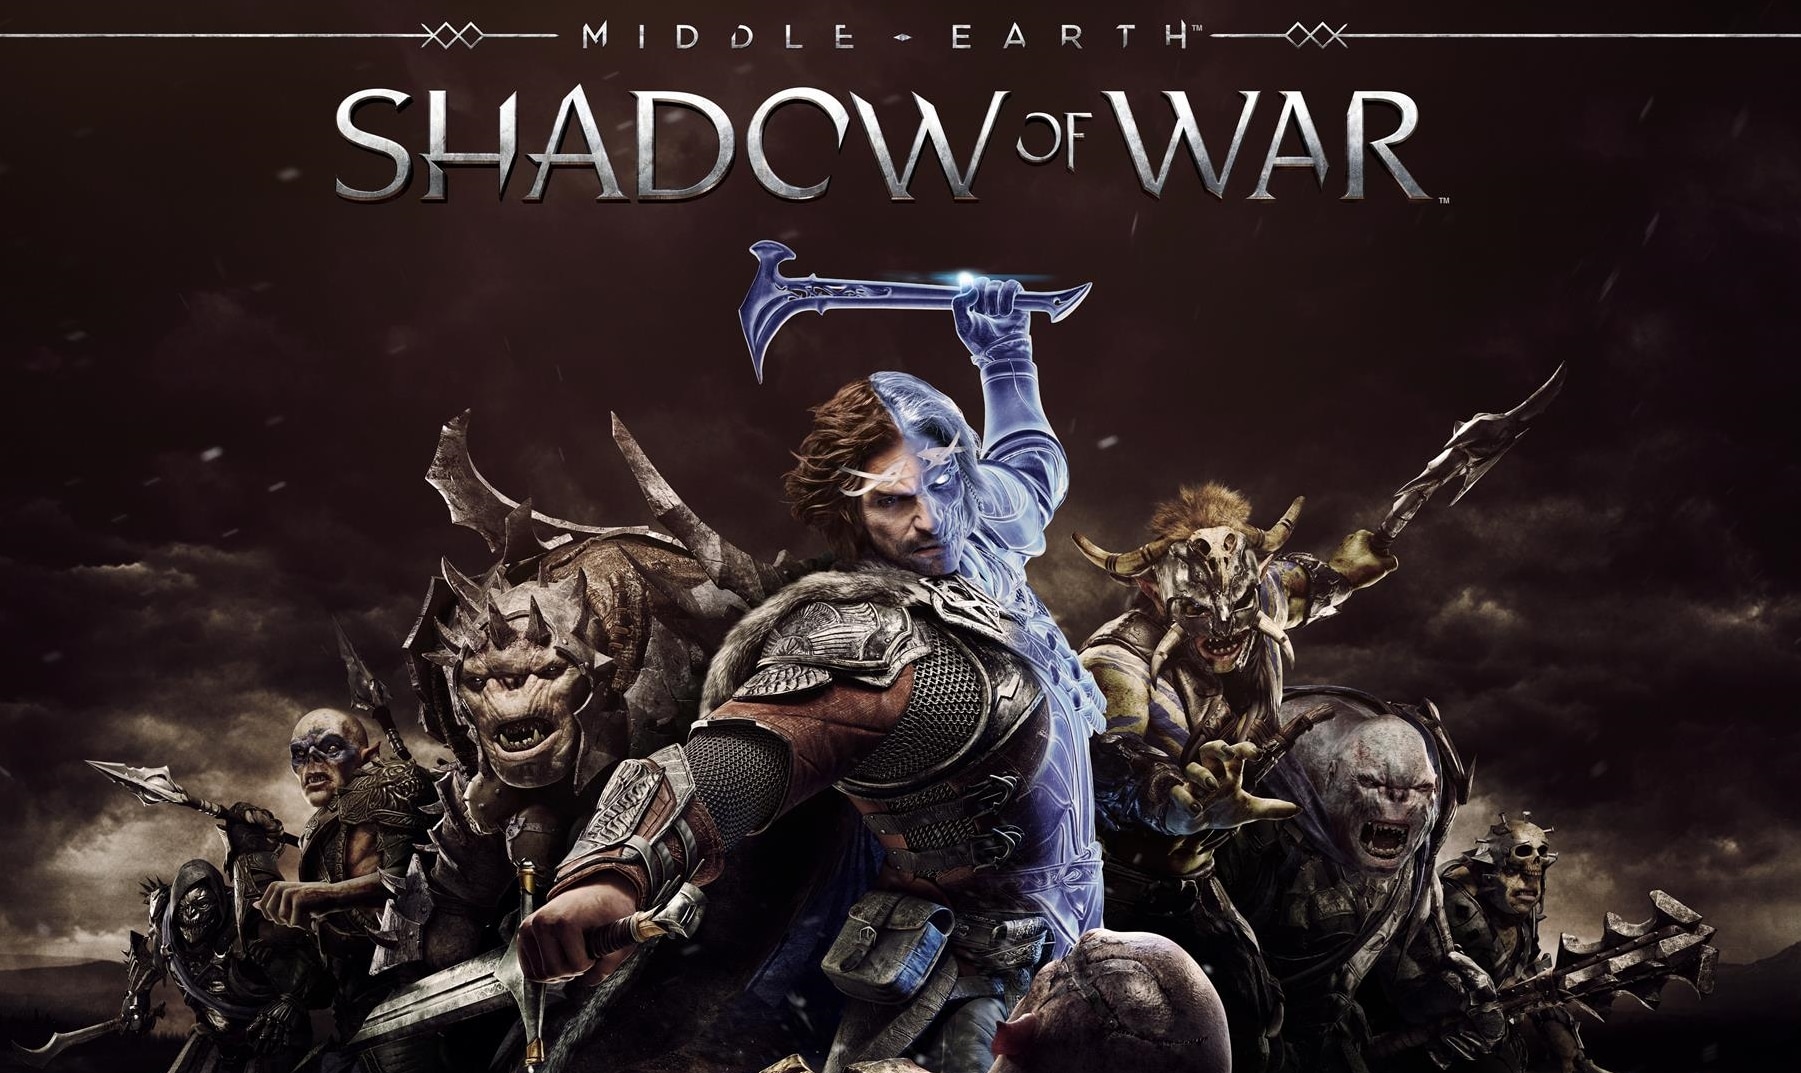 Nuevo video de Middle-earth: Shadow of War con imágenes impactantes de la ciudad de Minas Ithil